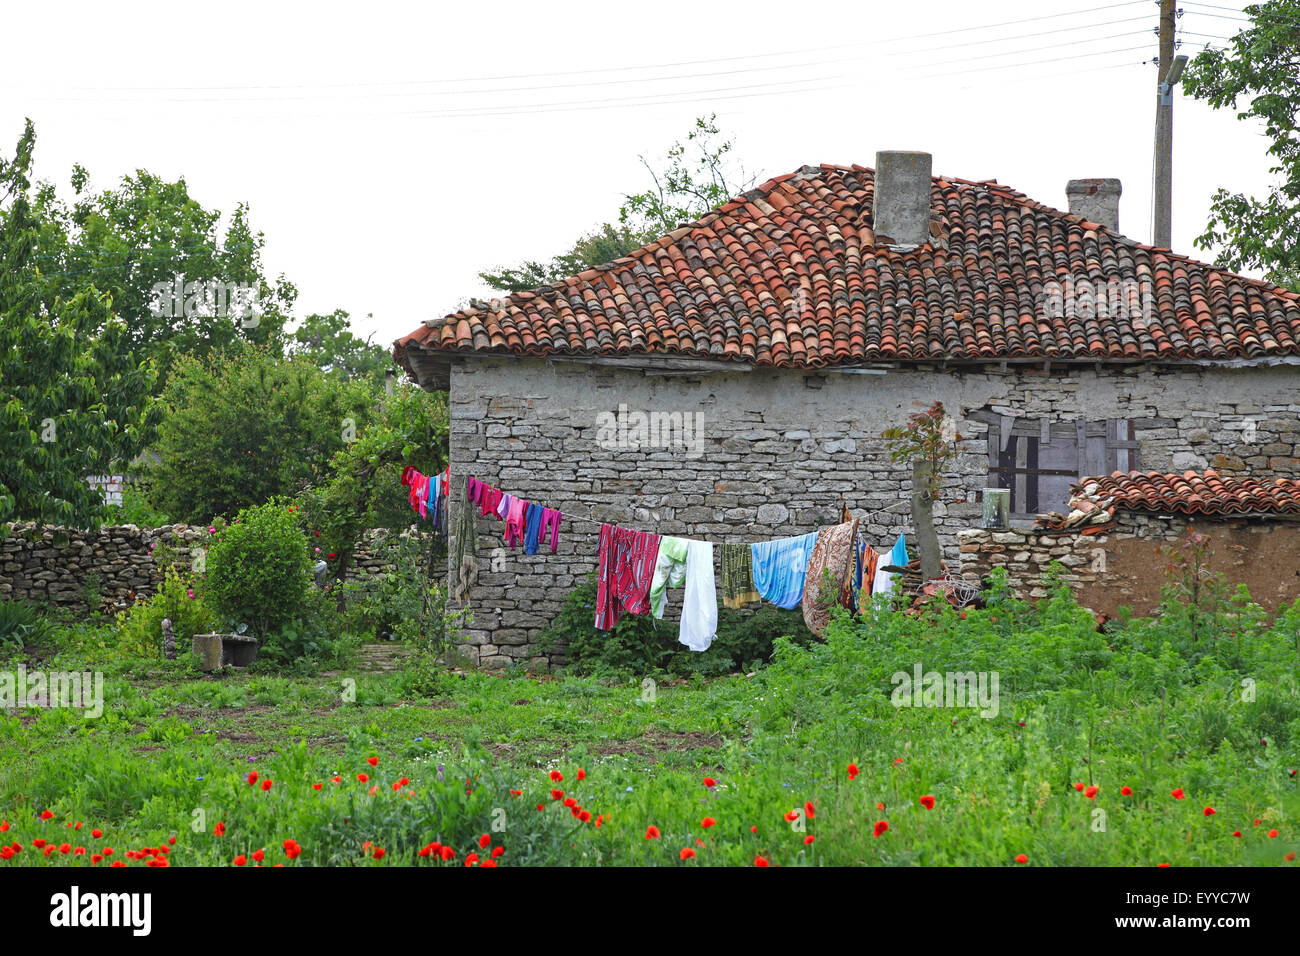 Maison rurale dans un village, la Bulgarie, l'Dobrudscha Banque D'Images